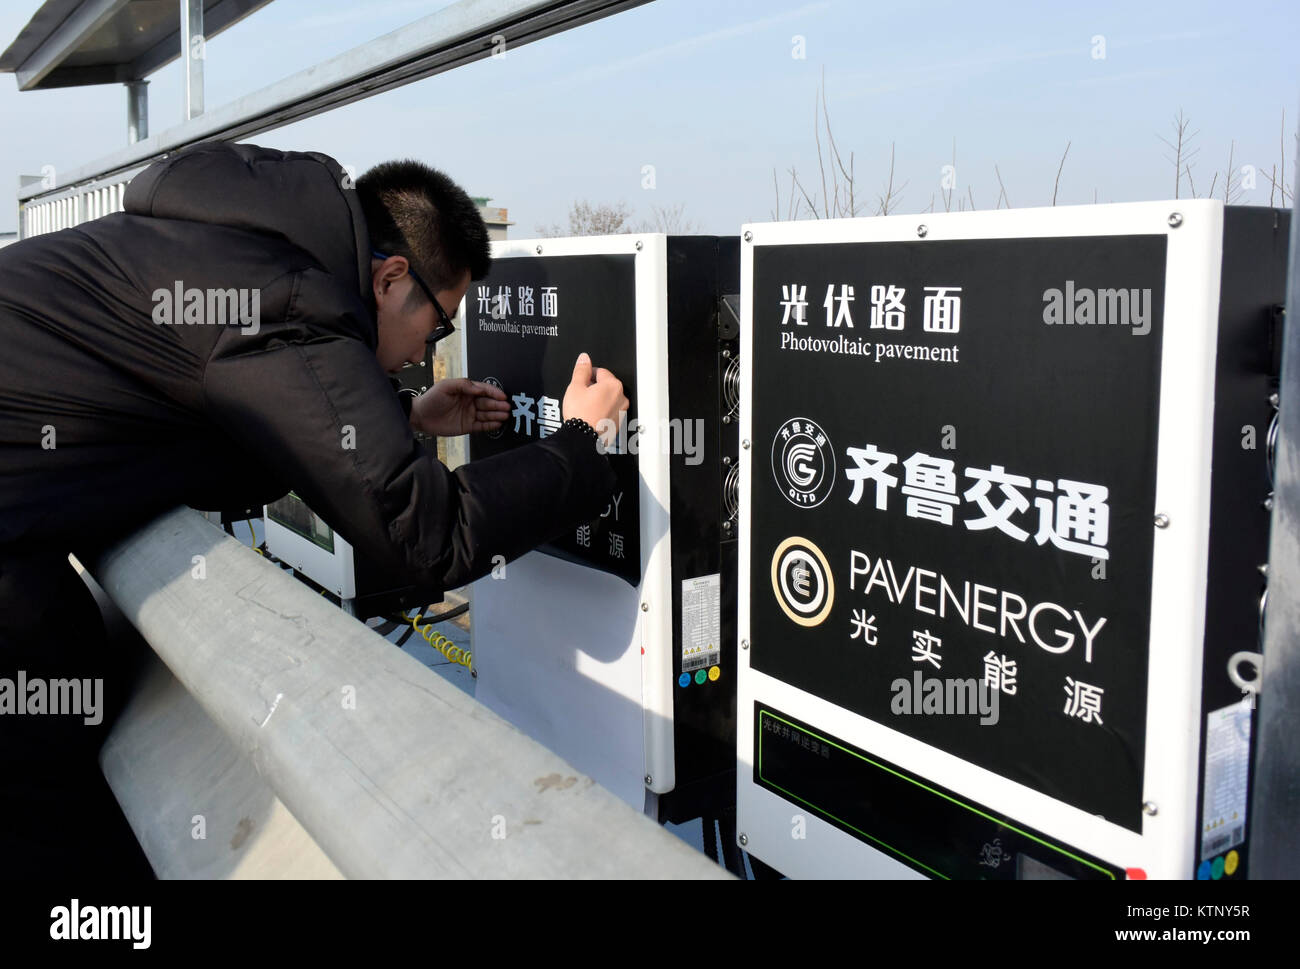 (171228) -- JINAN, 28 décembre 2017 (Xinhua) -- services de production d'équipements d'un autoroute solaire sont vus à Jinan, capitale de la province de Shandong en Chine orientale, le 22 décembre 2017. Chine Le jeudi a ouvert une section de 1 km de l'autoroute solaire pour les tests. Les panneaux solaires sont prévues sous le cadre d'une rocade autour de Paris. La surface de la route est faite de manière transparente, le poids-roulement du matériel qui permet à la lumière du soleil de pénétrer. Les panneaux, couvrant 5 875 mètres carrés, peut générer 1 millions de kwh d'électricité par an, suffisamment pour répondre à la demande quotidienne d'environ 800 ménages.(Xinhua/Zhu Zheng) (wyo) Banque D'Images